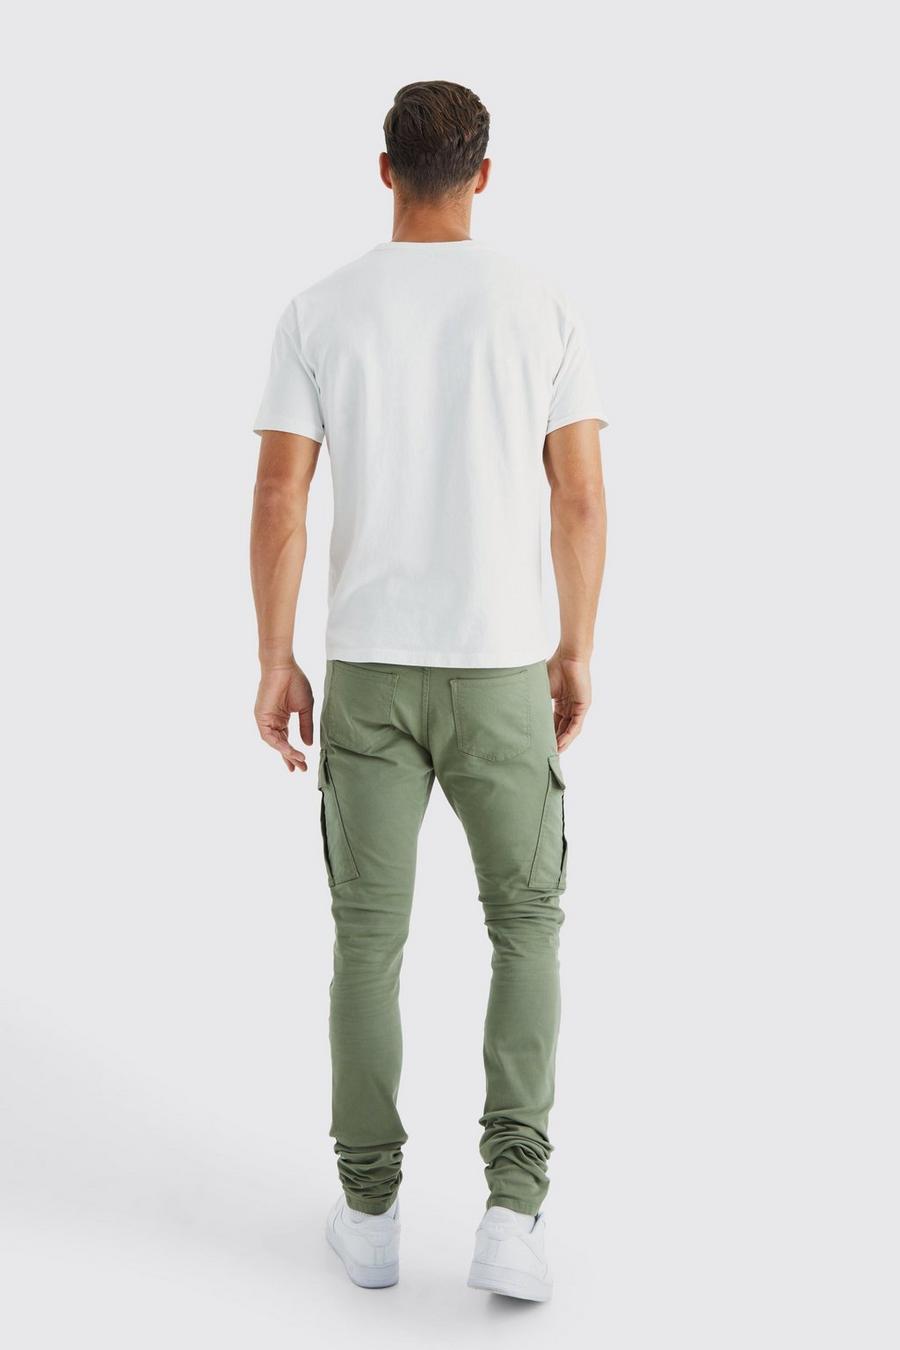 zielone spodnie jeans bojówki kieszenie